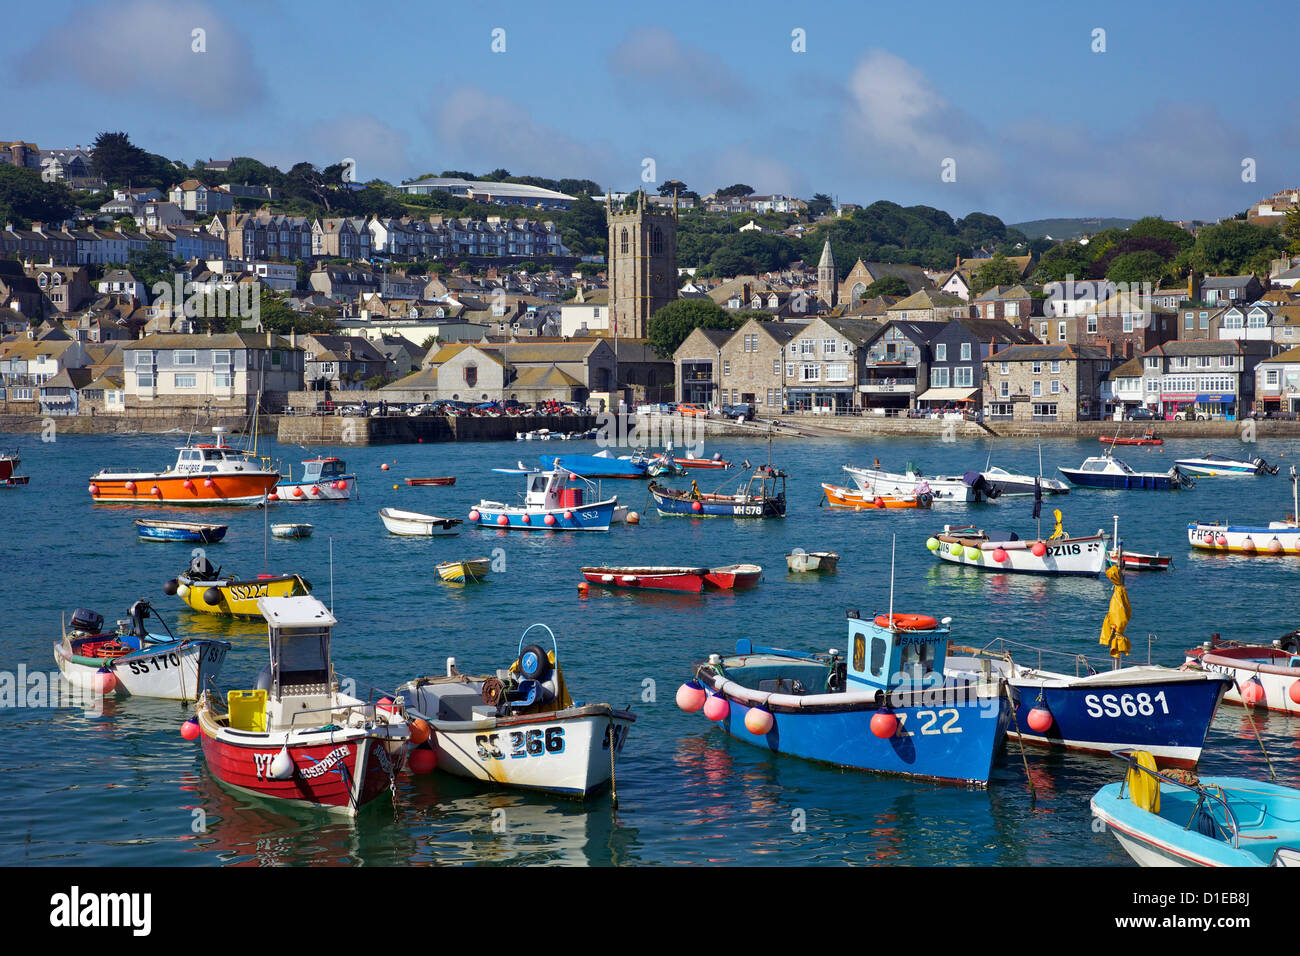 Soleil d'été sur les bateaux dans le vieux port, St Ives, Cornwall, Angleterre, Royaume-Uni, Europe Banque D'Images